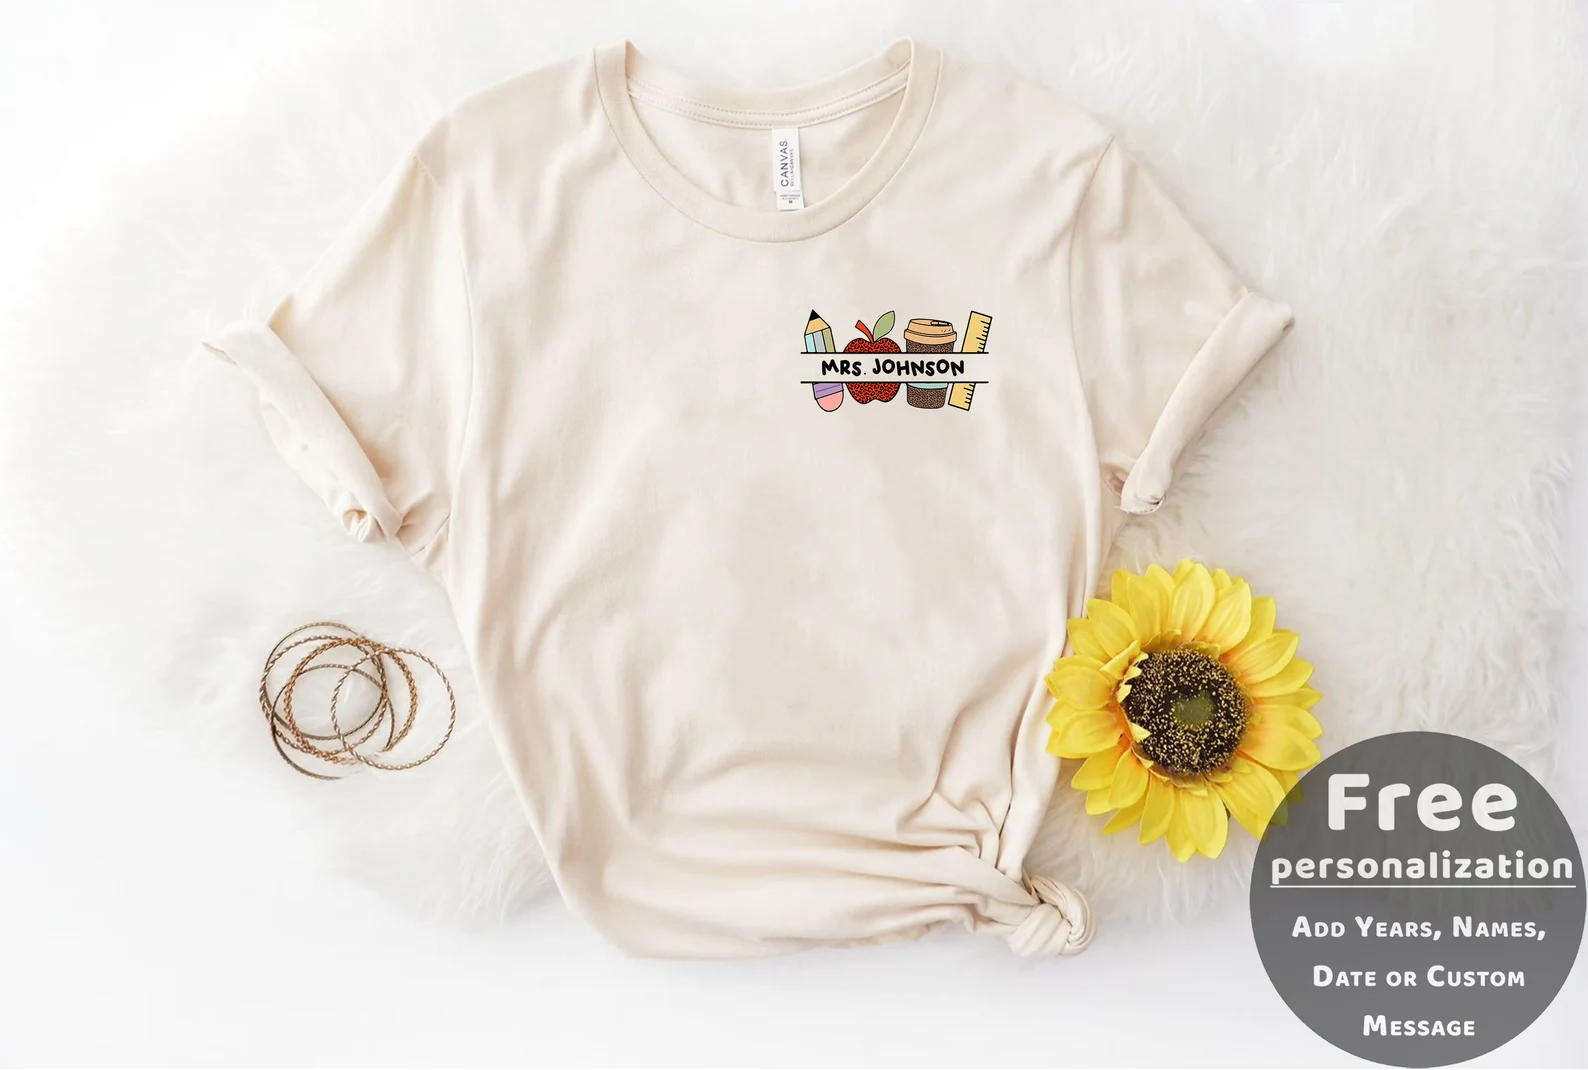 The Best Teacher T-shirts Every Teacher Will Want - Kara Creates